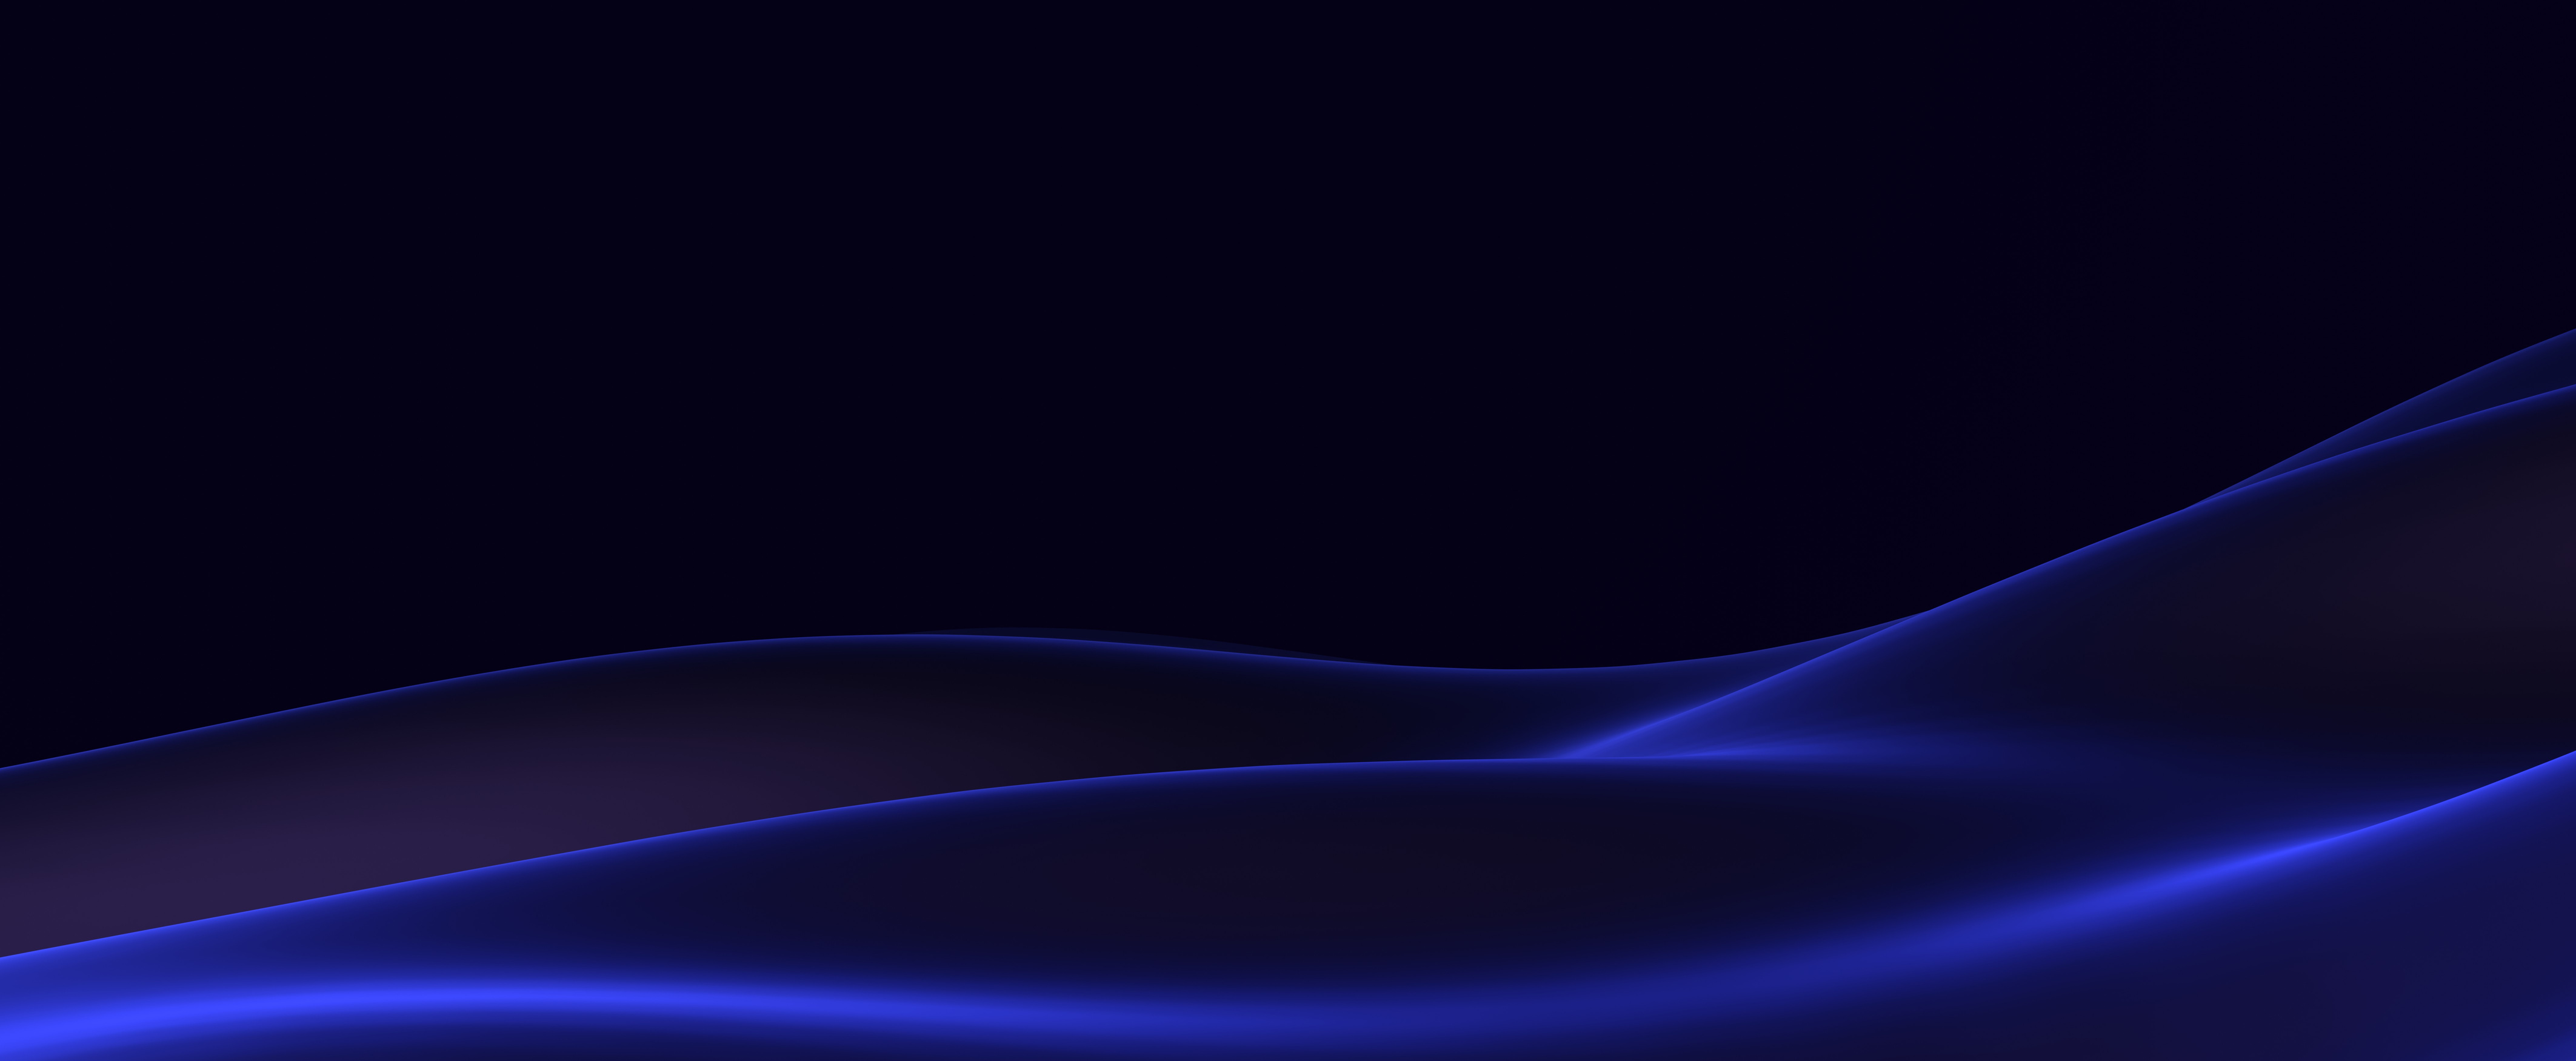 Blue shimmering waves on dark background